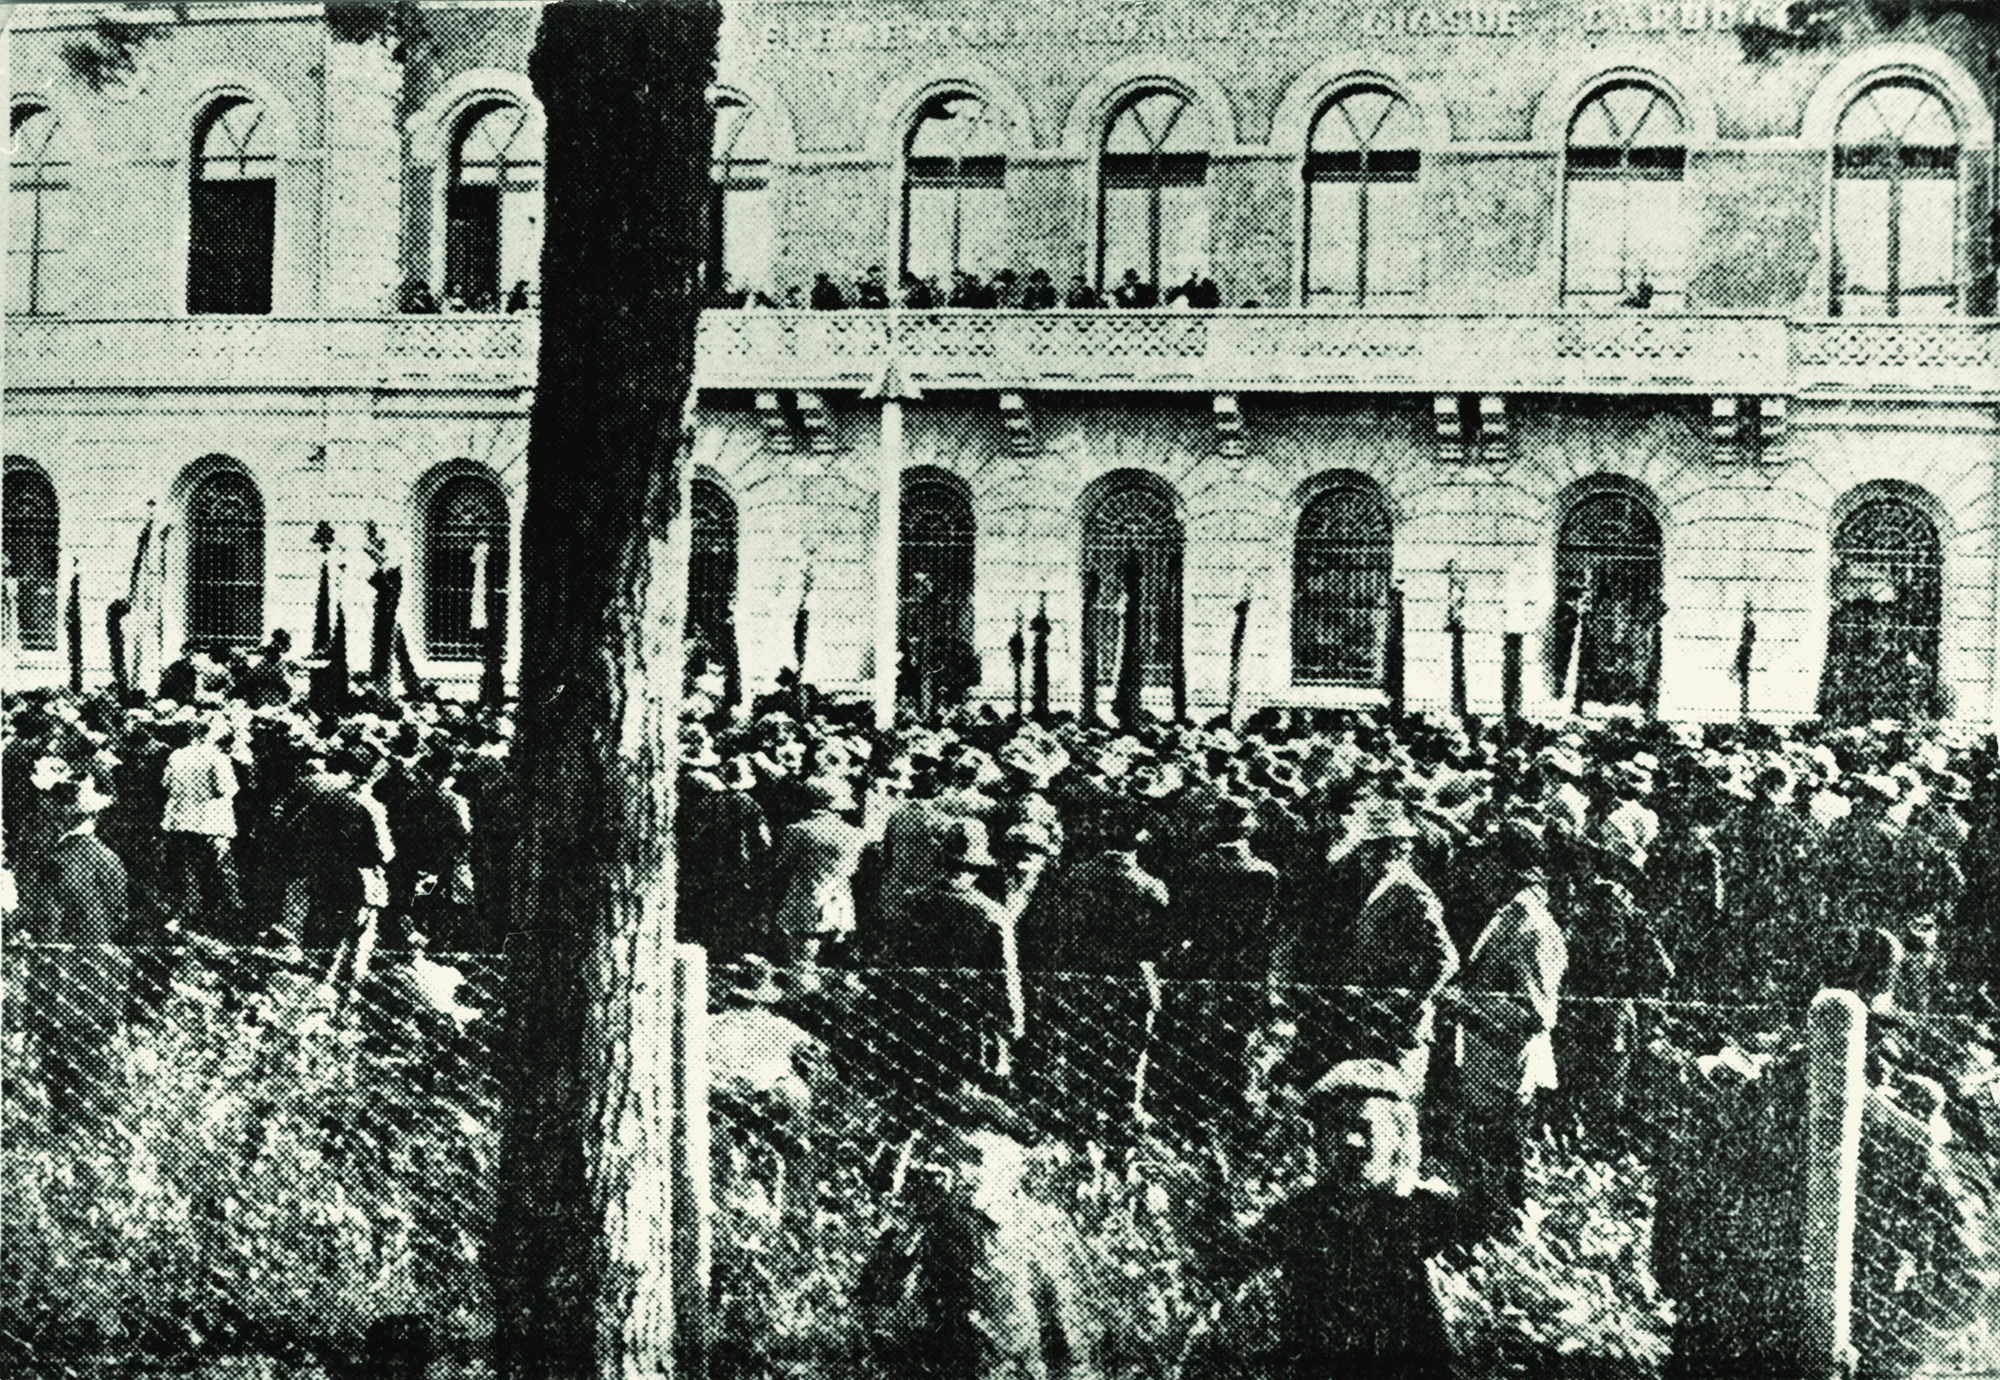 Imola, 3 luglio 1919, moti del caro vita manifestazione all’esterno delle scuole Carducci. Imola, Archivio Cidra